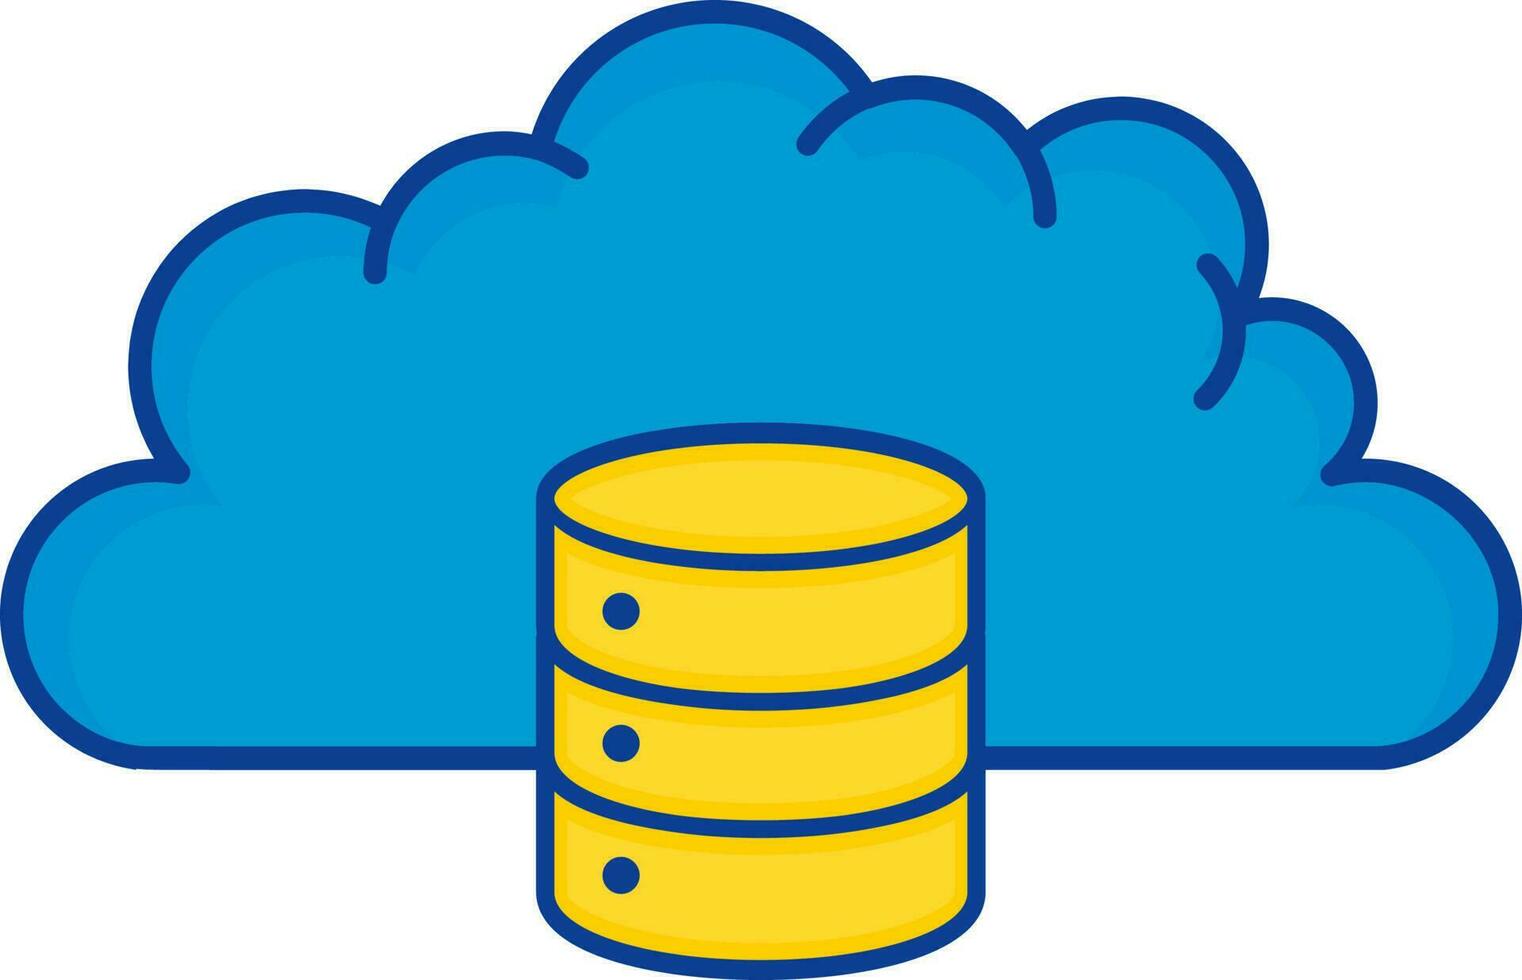 azul e amarelo ilustração do nuvem com base de dados plano ícone. vetor